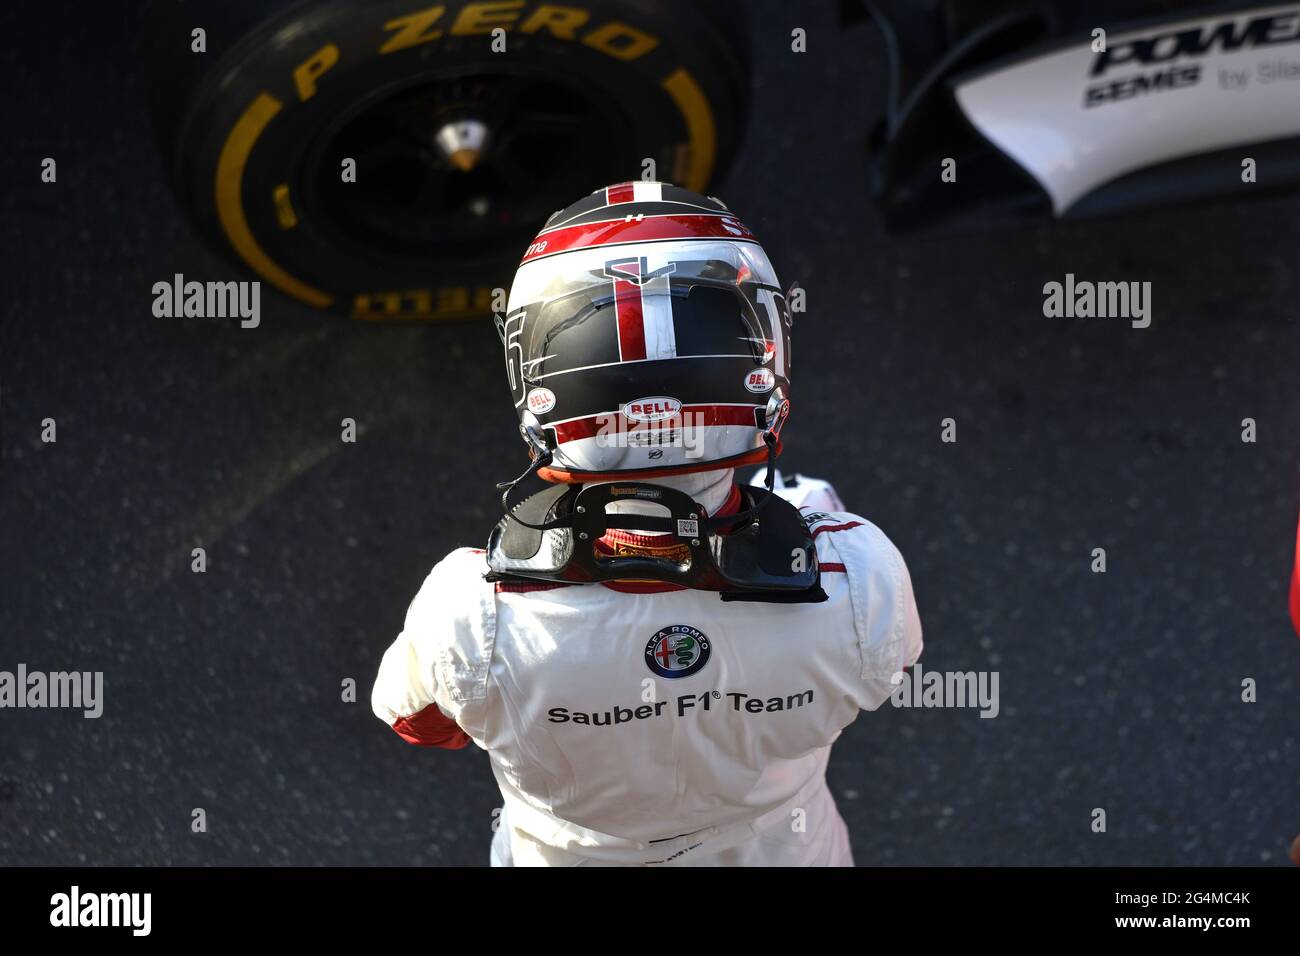 Formel-1-Fahrer mit Schutzhelm, während des F1 Milan Festival, 2018, in Mailand. Stockfoto